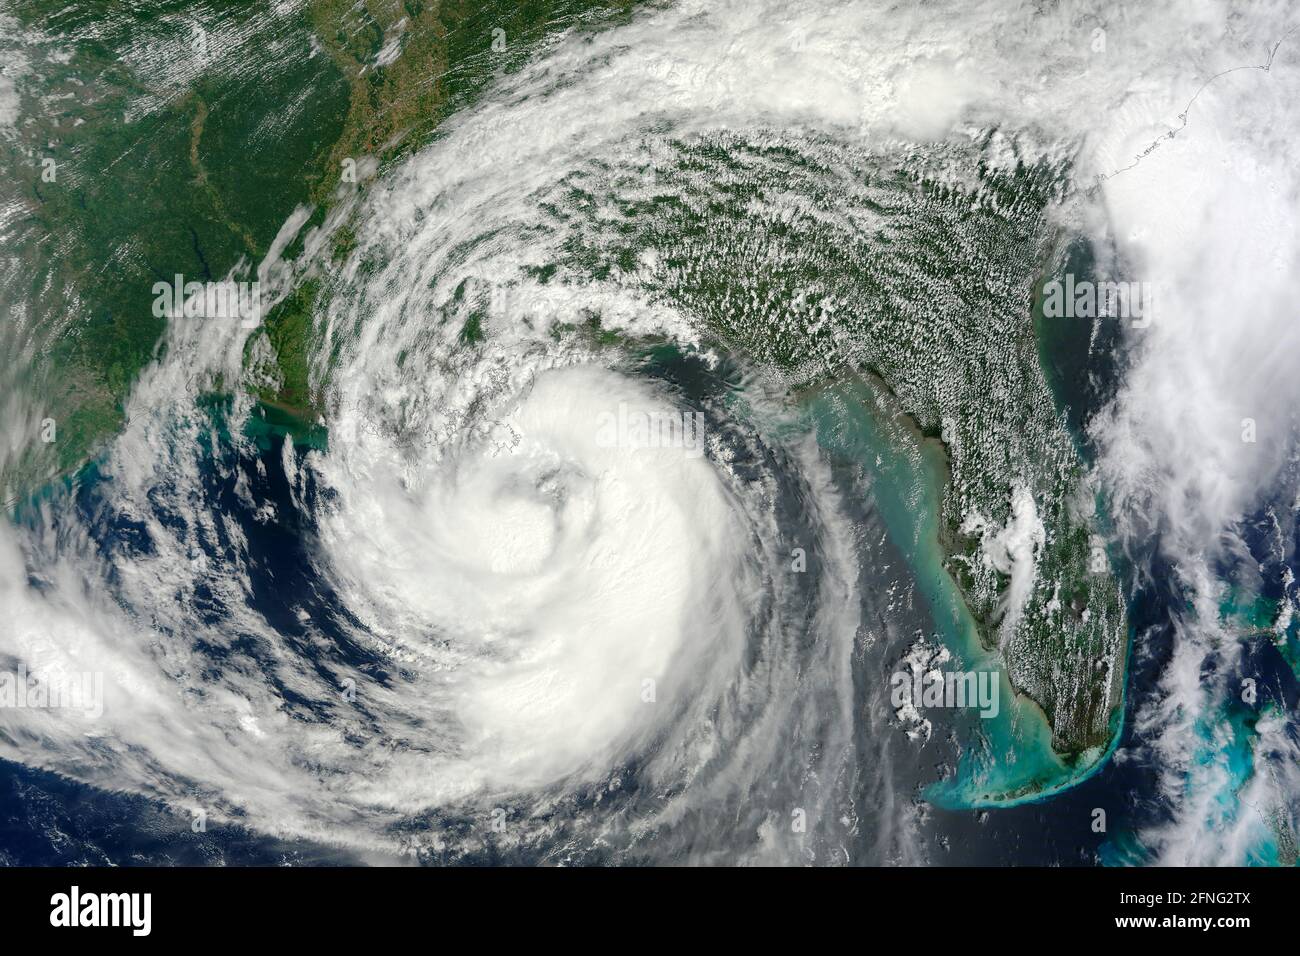 GOLFO DE MÉXICO, EE.UU. - 28 de agosto de 2012 - El 28 de agosto de 2012, la tormenta tropical Isaac alcanzó la fuerza de huracán y se predijo que se derrumbe en el Gul Foto de stock